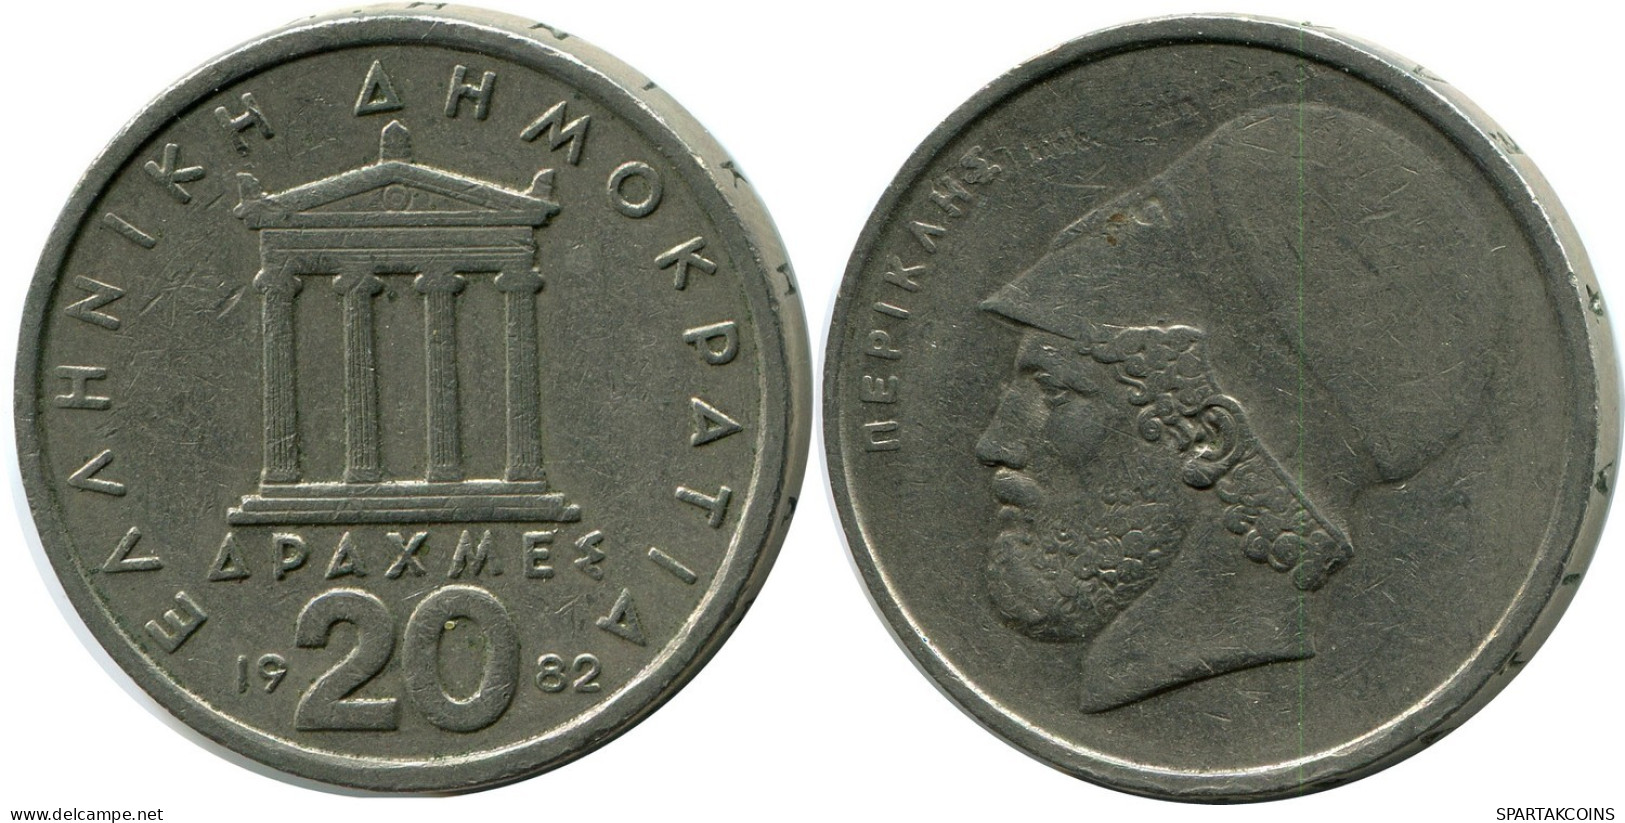 20 DRACHMES 1982 GRECIA GREECE Moneda #AZ324.E.A - Greece